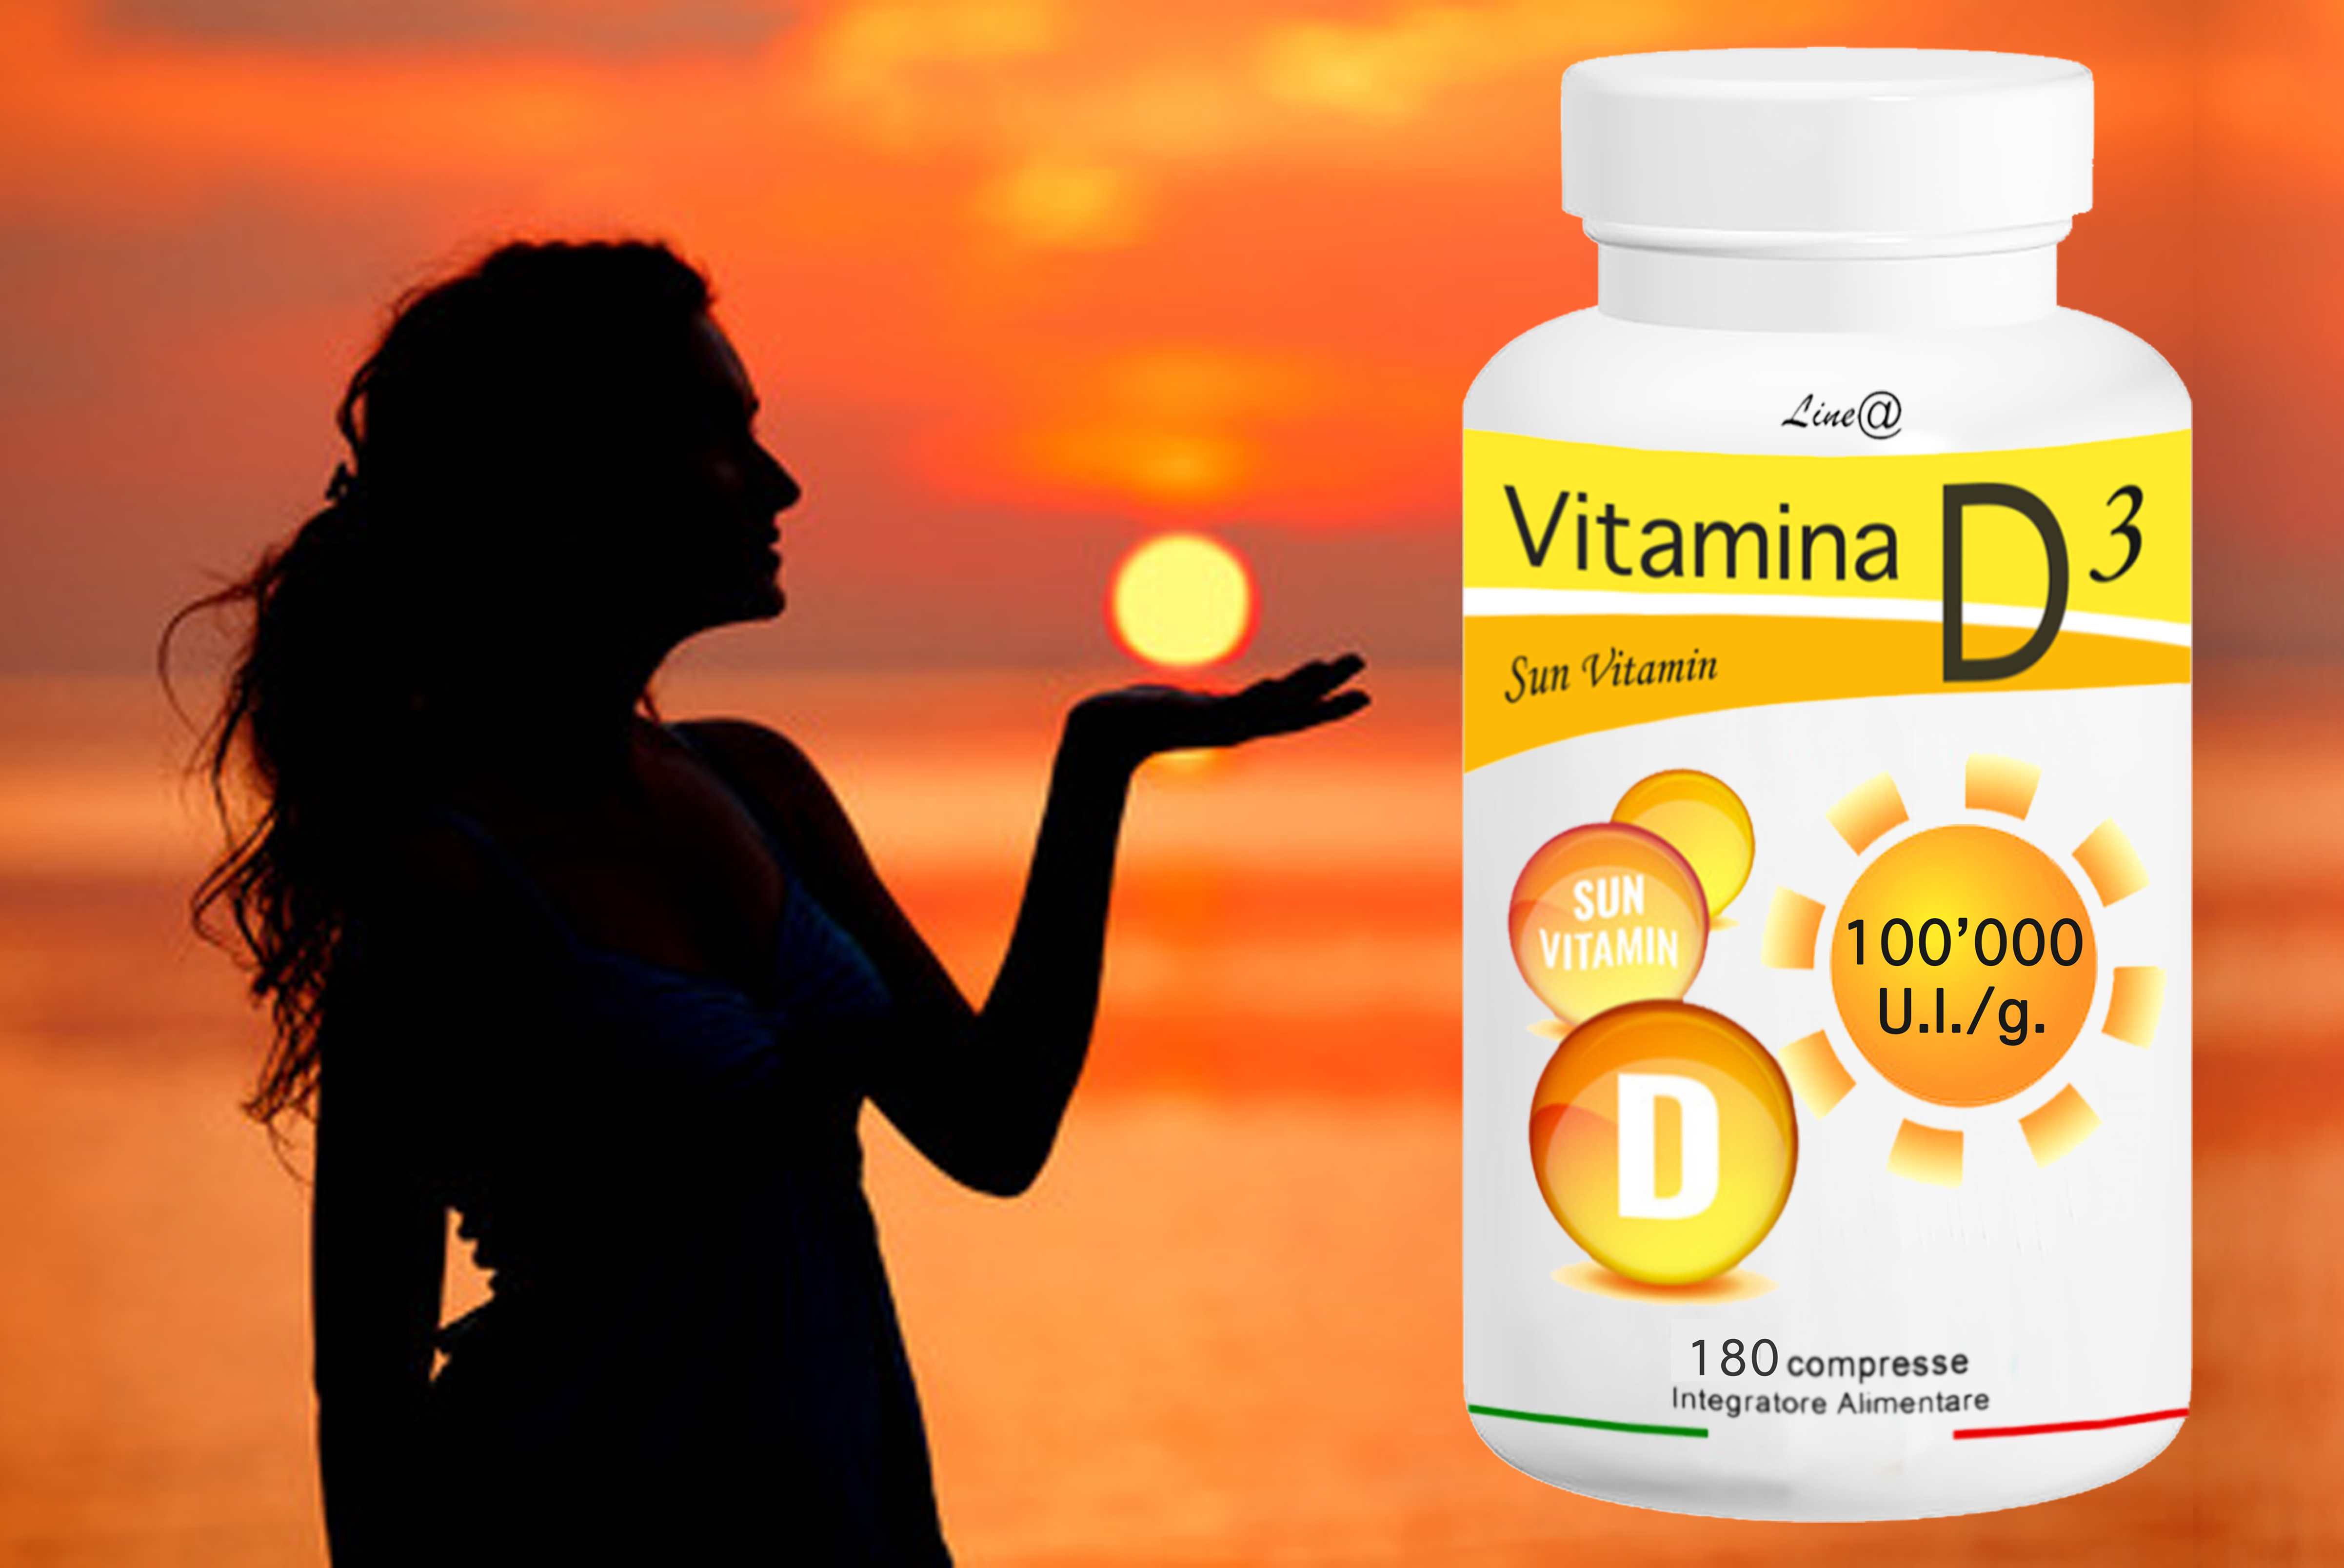 Vitamin d3 как принимать. Витамин д3 солнце. Солнечный витамин д3. Витамин д. Витамин д для женщин.